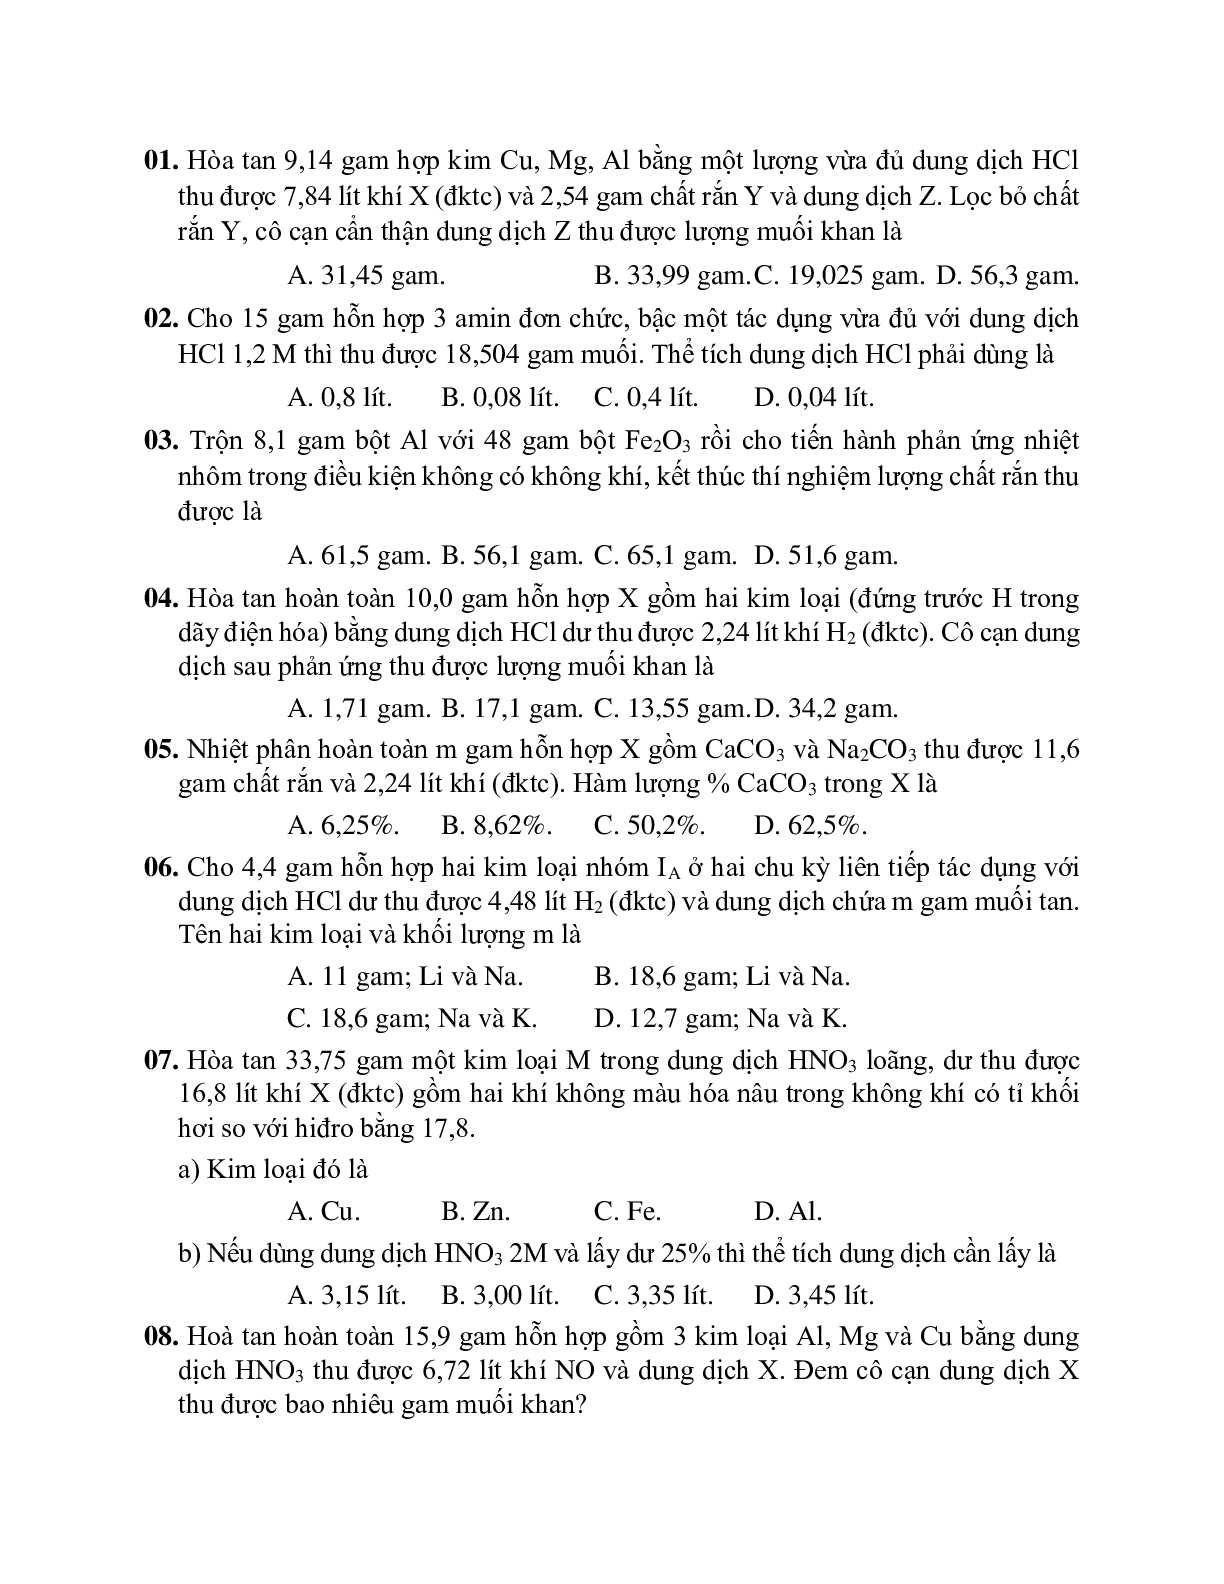 Lý thuyết, bài tập về phương pháp bảo toàn khối lượng có đáp án, chọn lọc (trang 4)